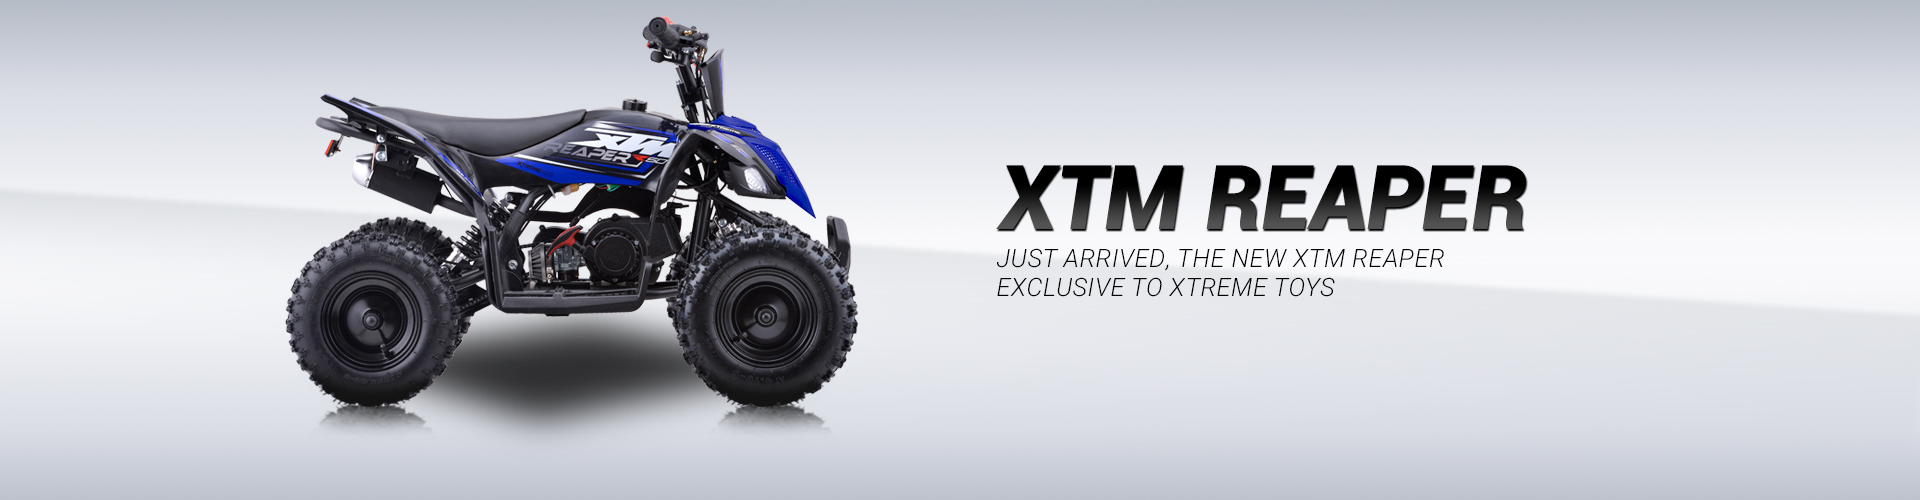 XTM Reaper Quad 50cc